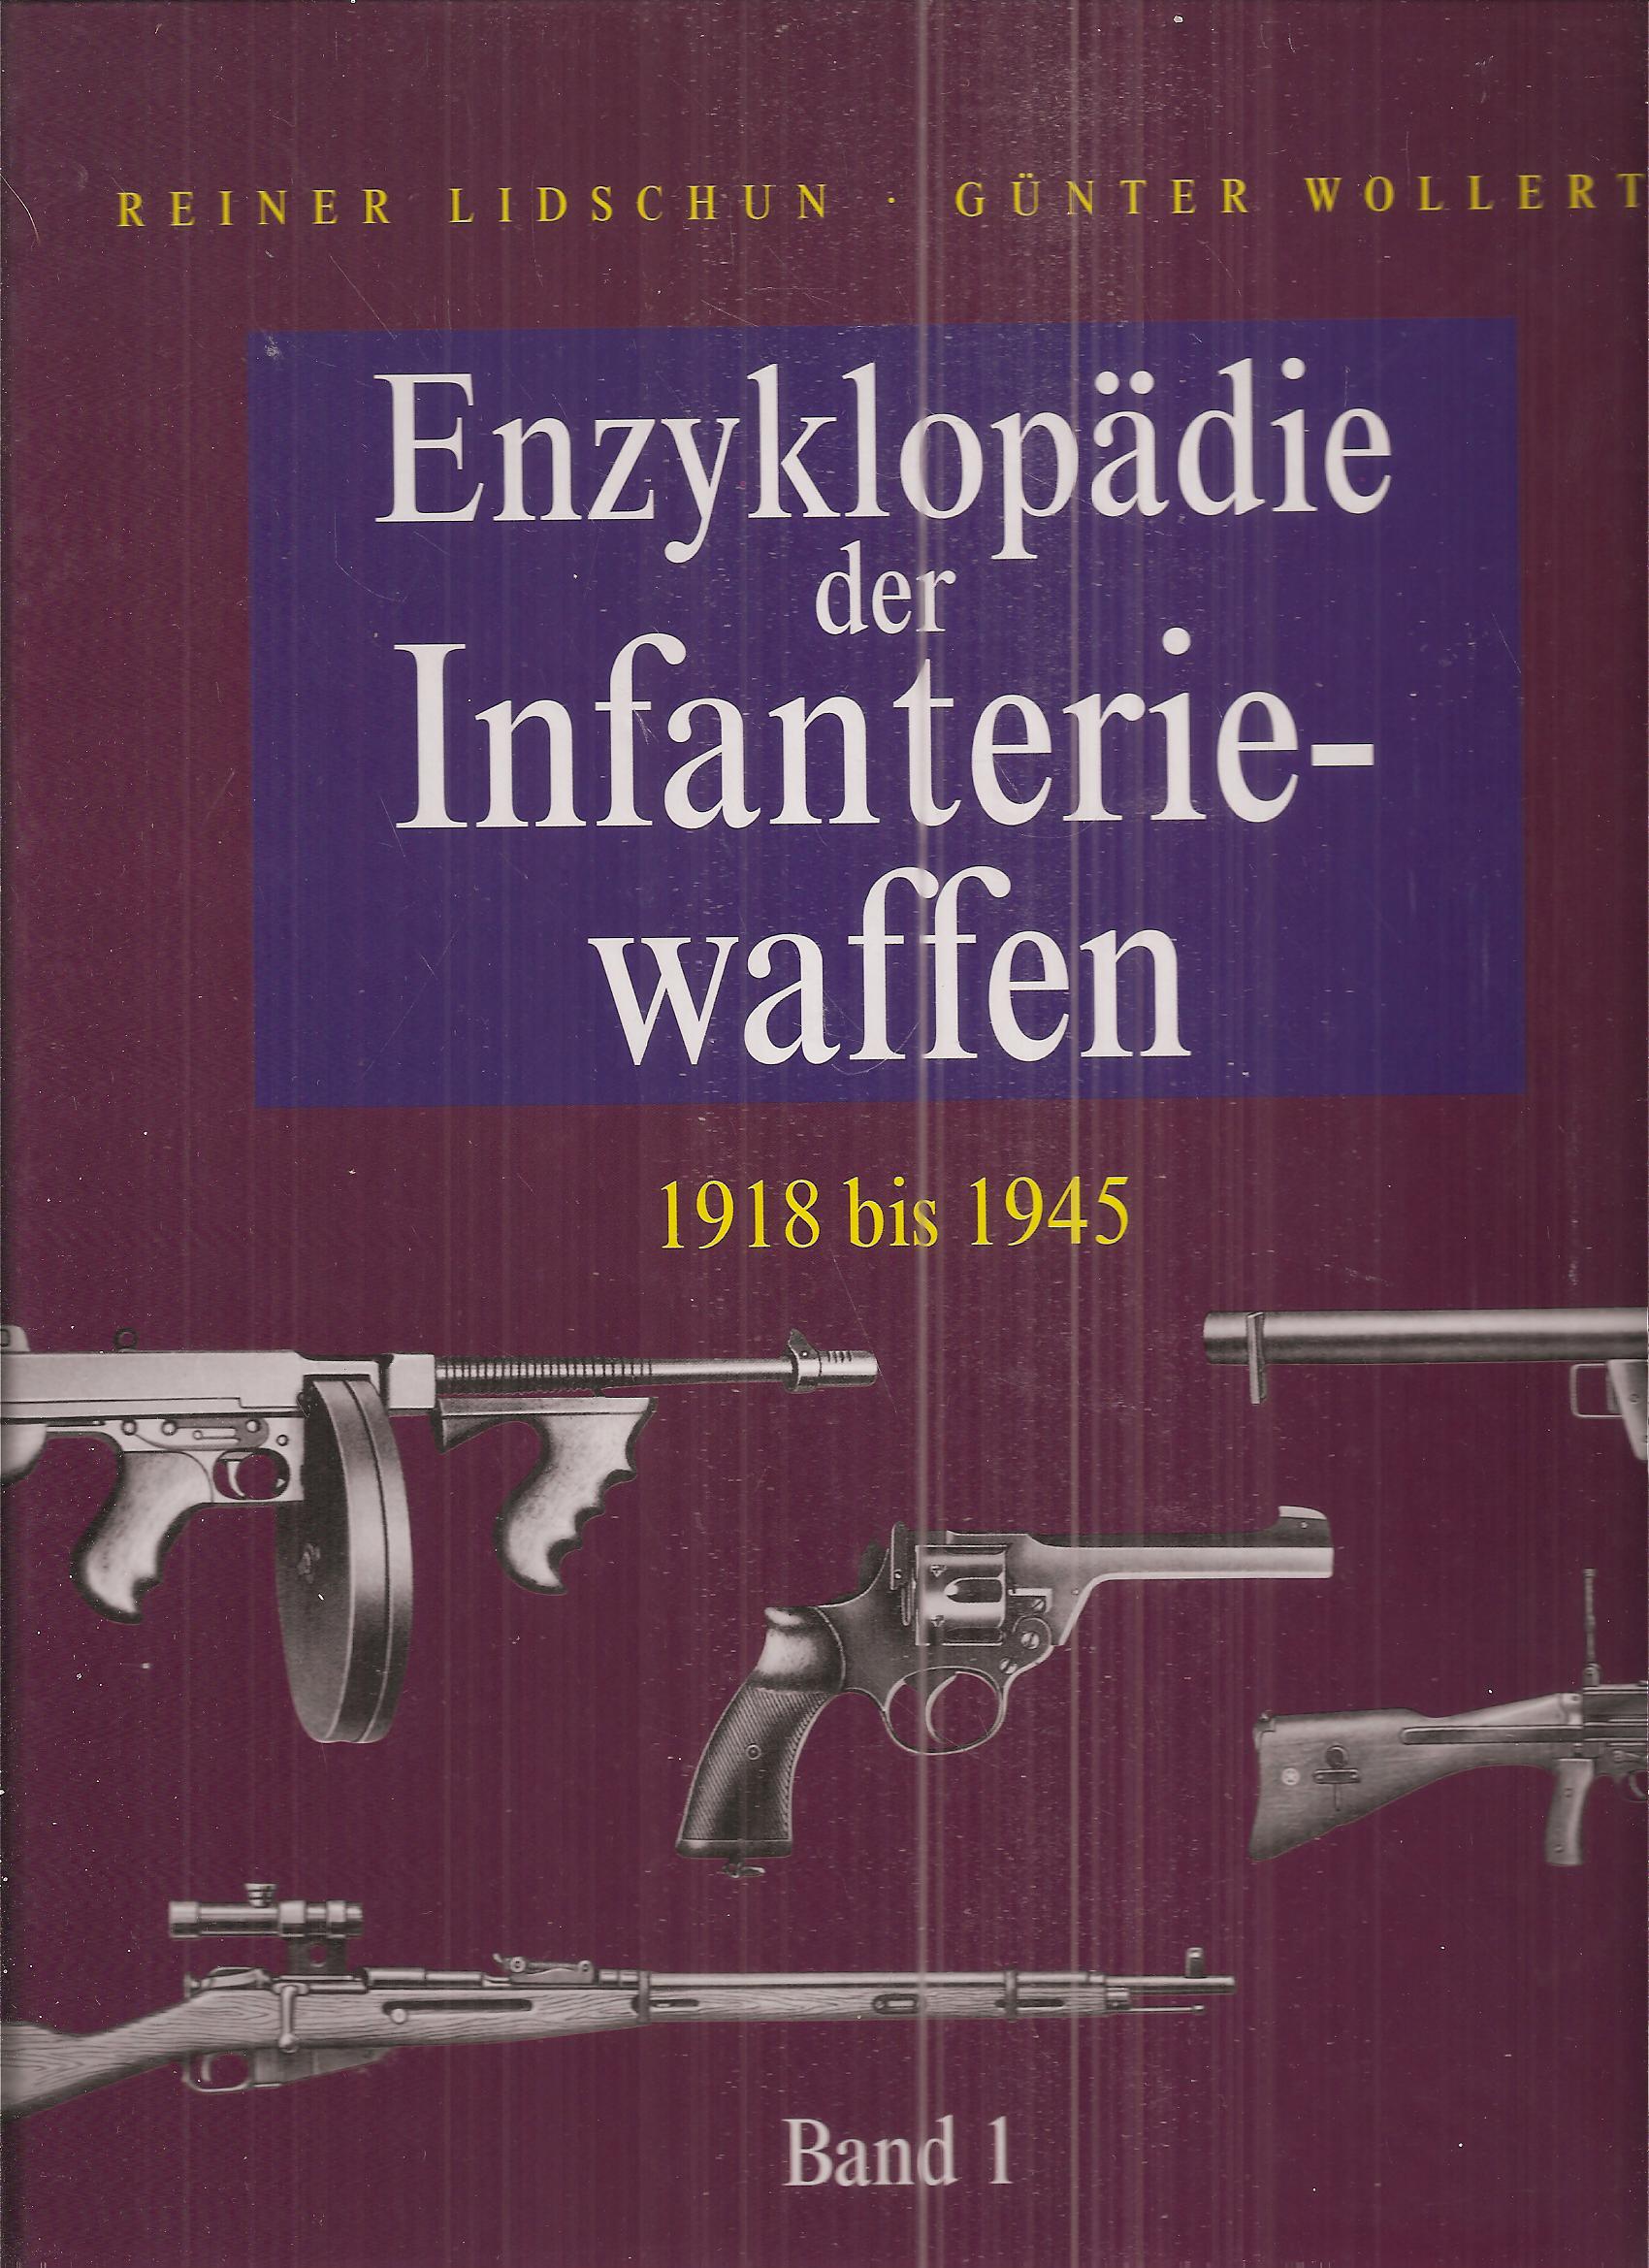 Enzyklopädie der Infanteriewaffen 1918 bis 1945 Band 1 und 2 (2 Bände) - Lidschun,Reiner und Günter Wollert